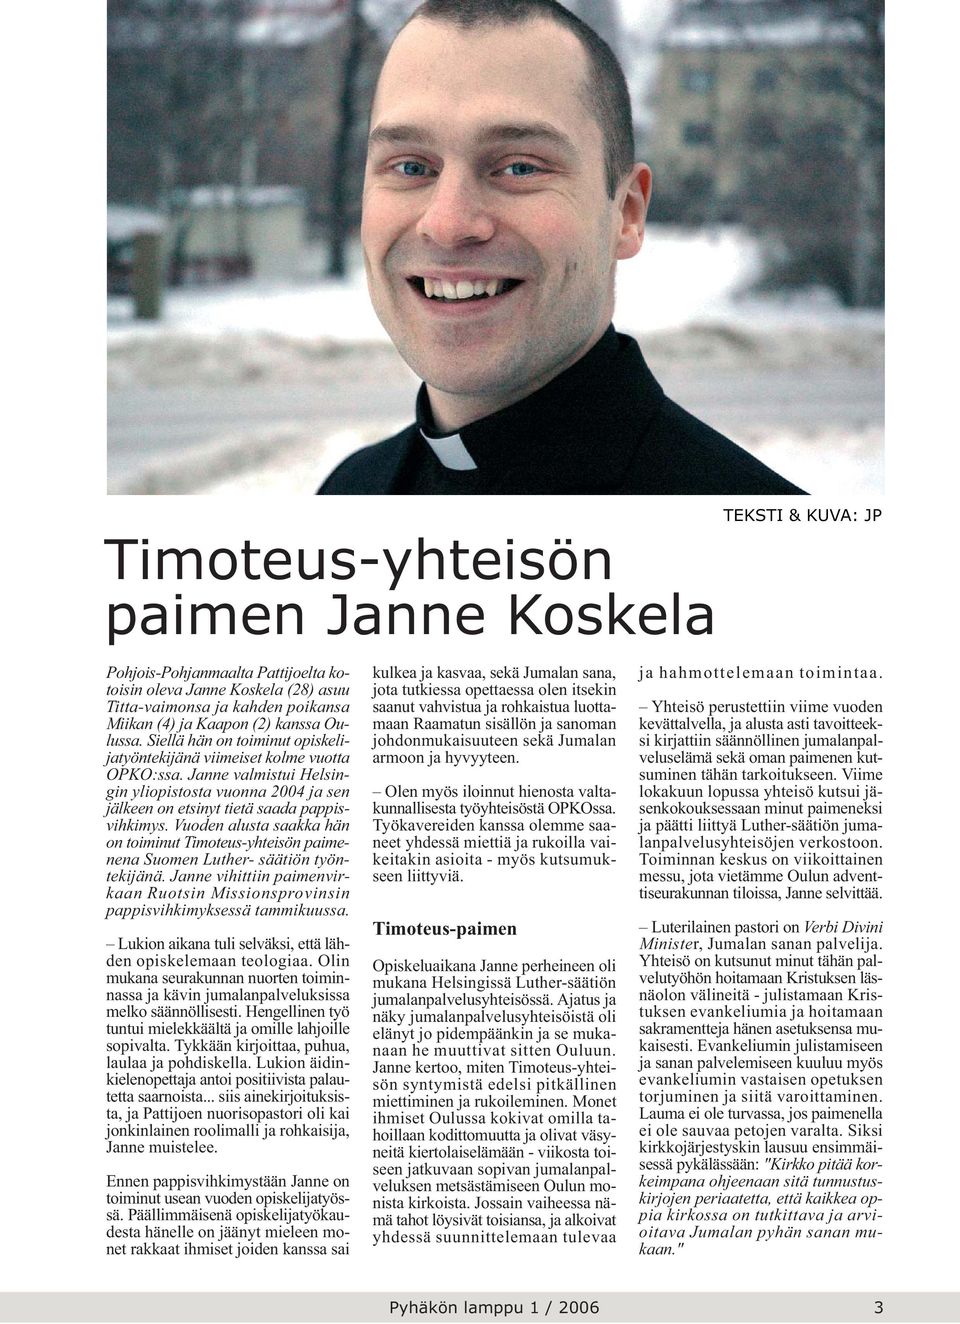 Vuoden alusta saakka hän on toiminut Timoteus-yhteisön paimenena Suomen Luther- säätiön työntekijänä. Janne vihittiin paimenvirkaan Ruotsin Missionsprovinsin pappisvihkimyksessä tammikuussa.